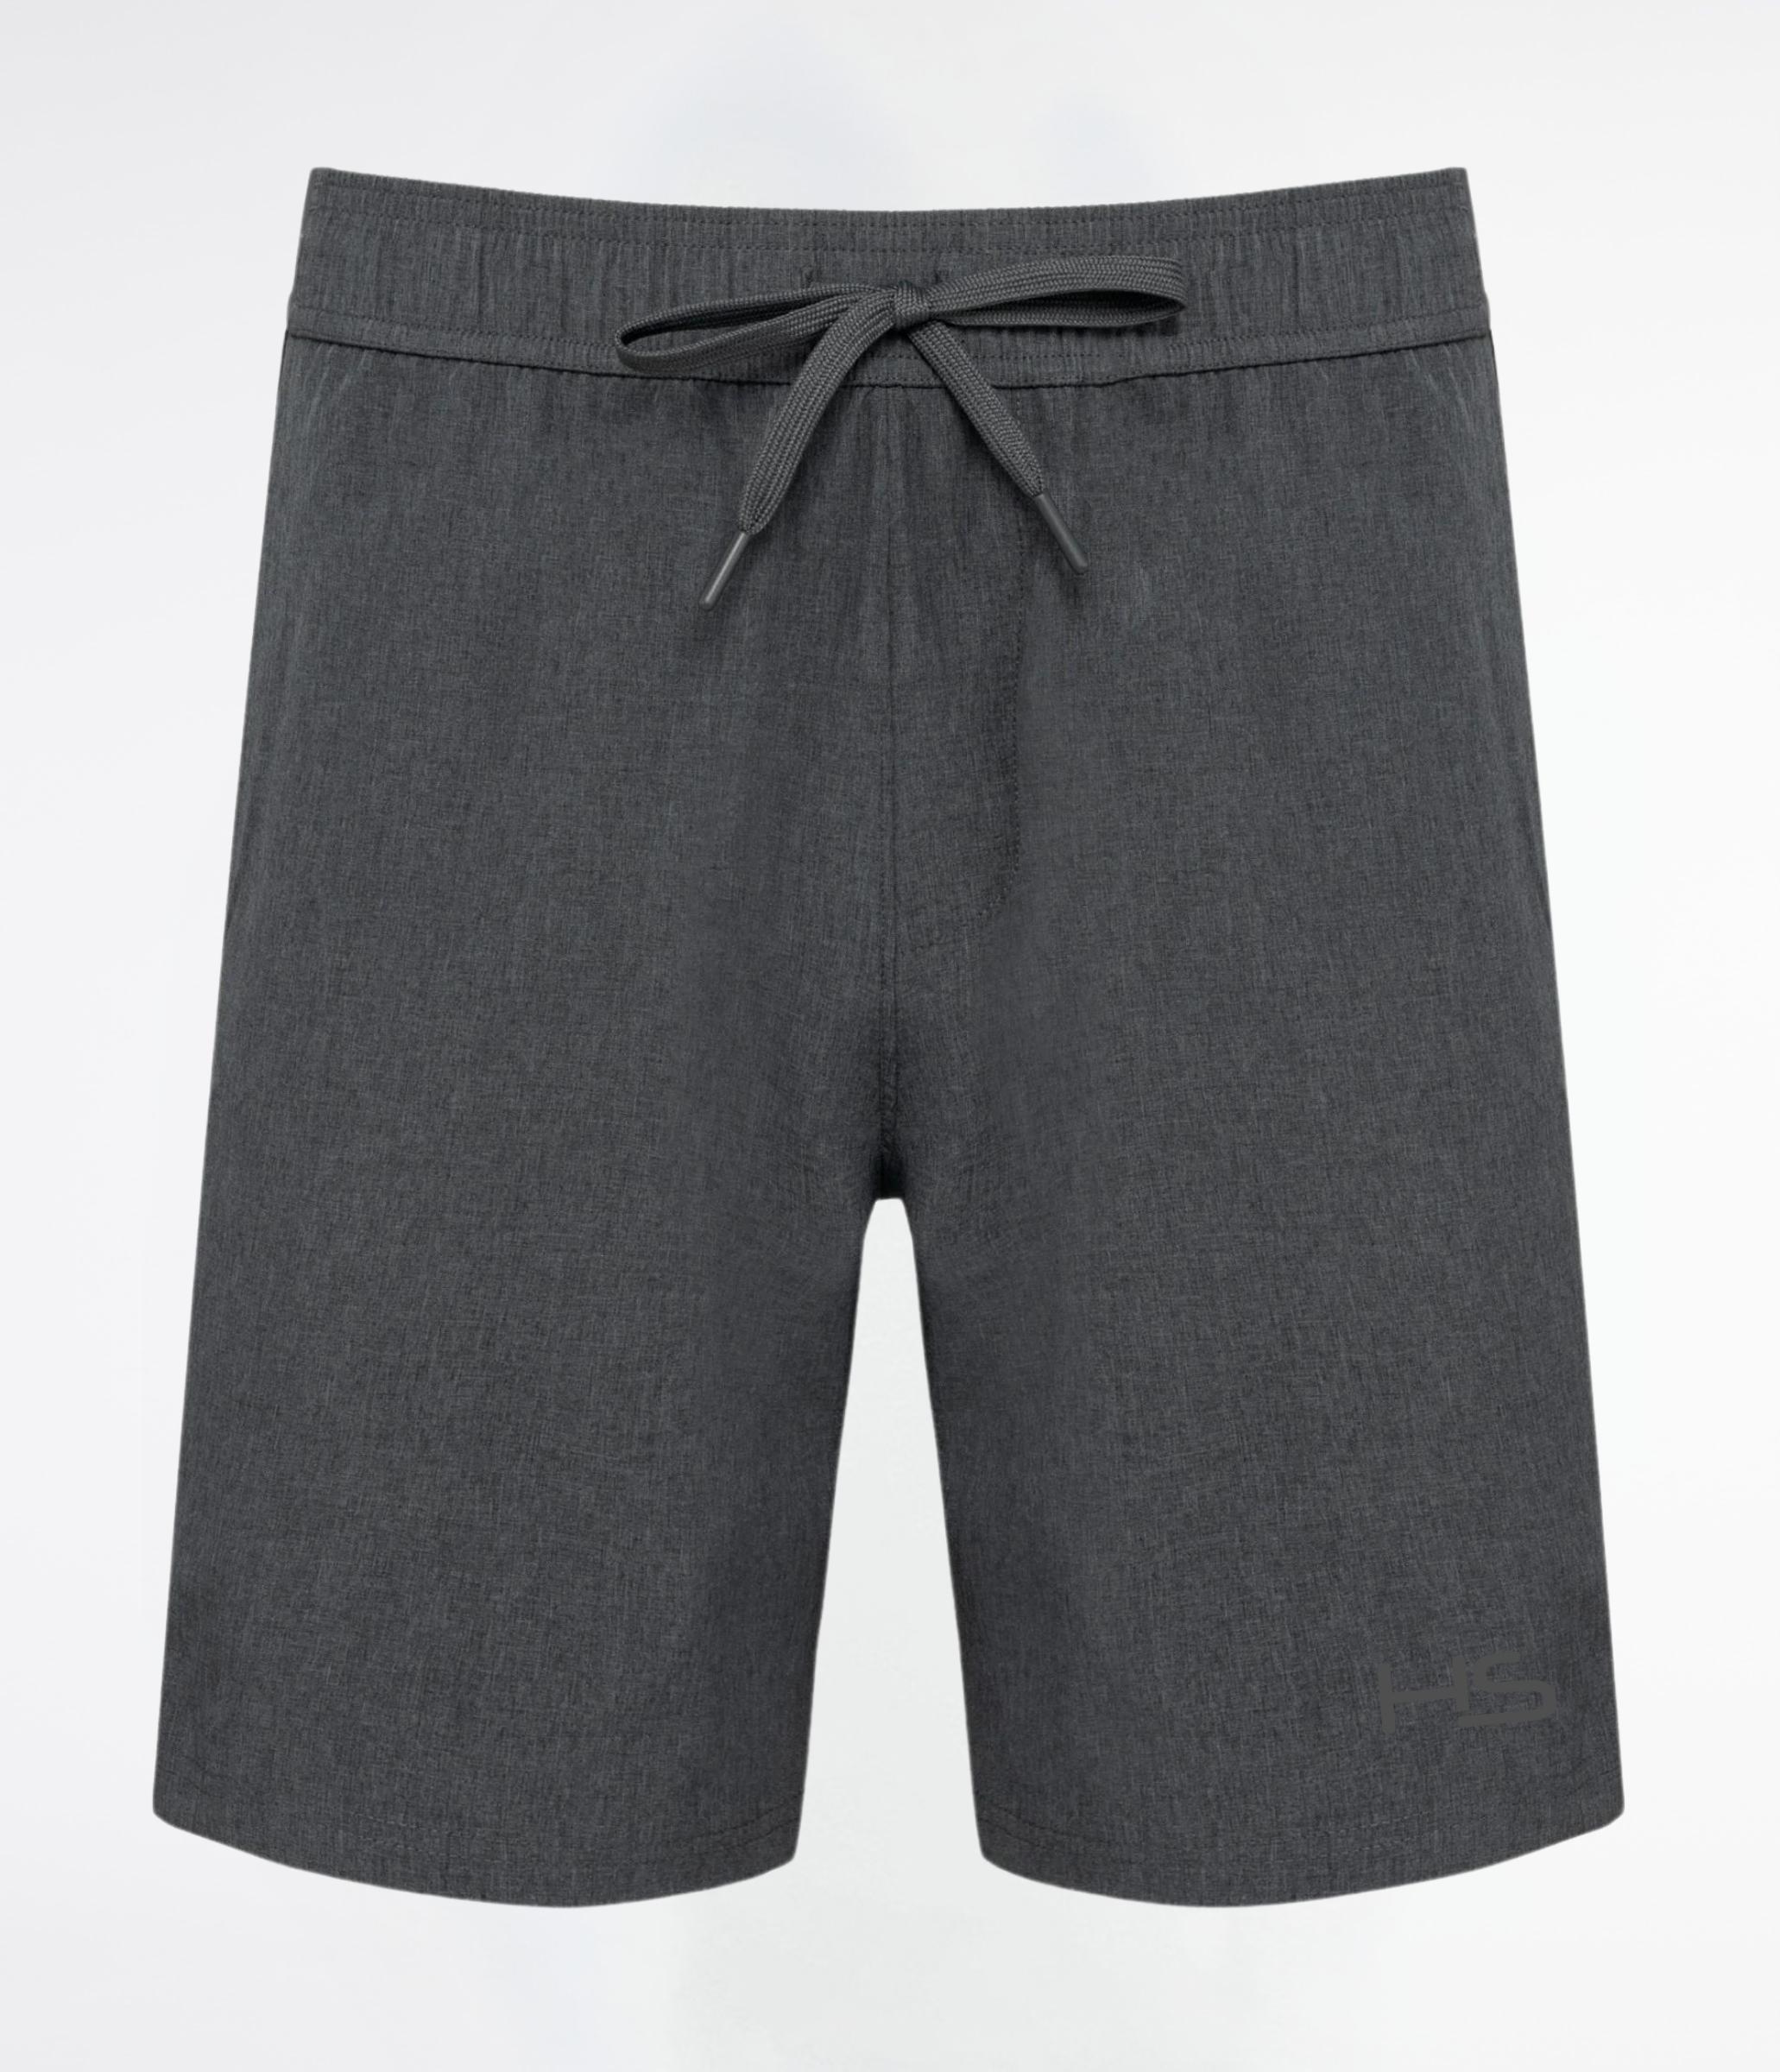 Shorts tennis/padel dark grey/black